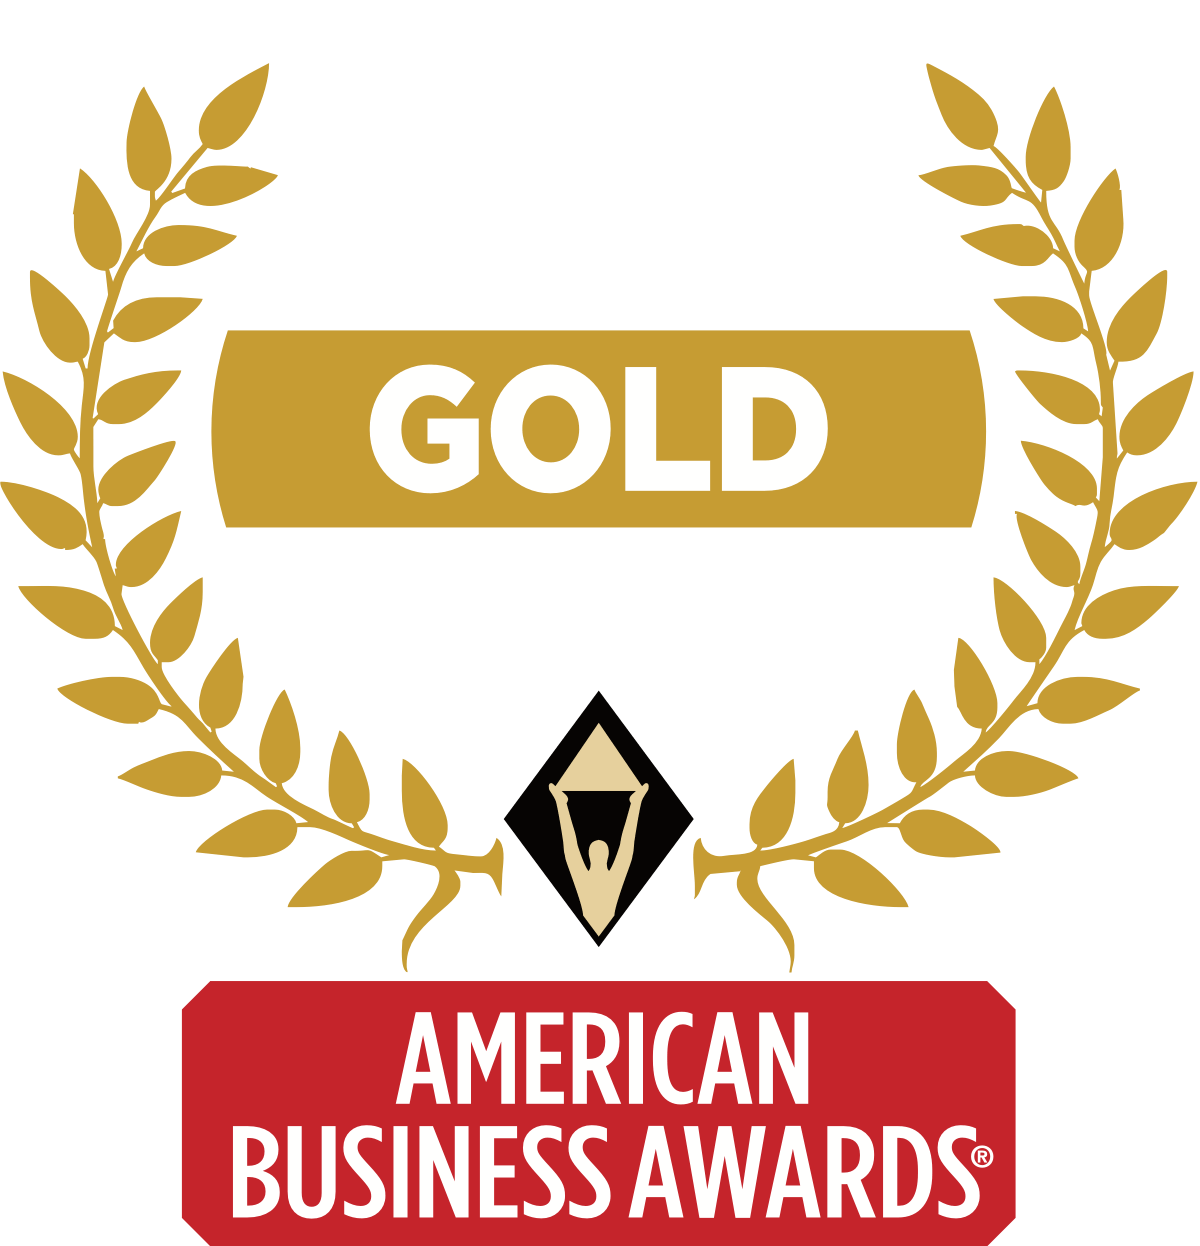 2018 Stevie Gold Winner